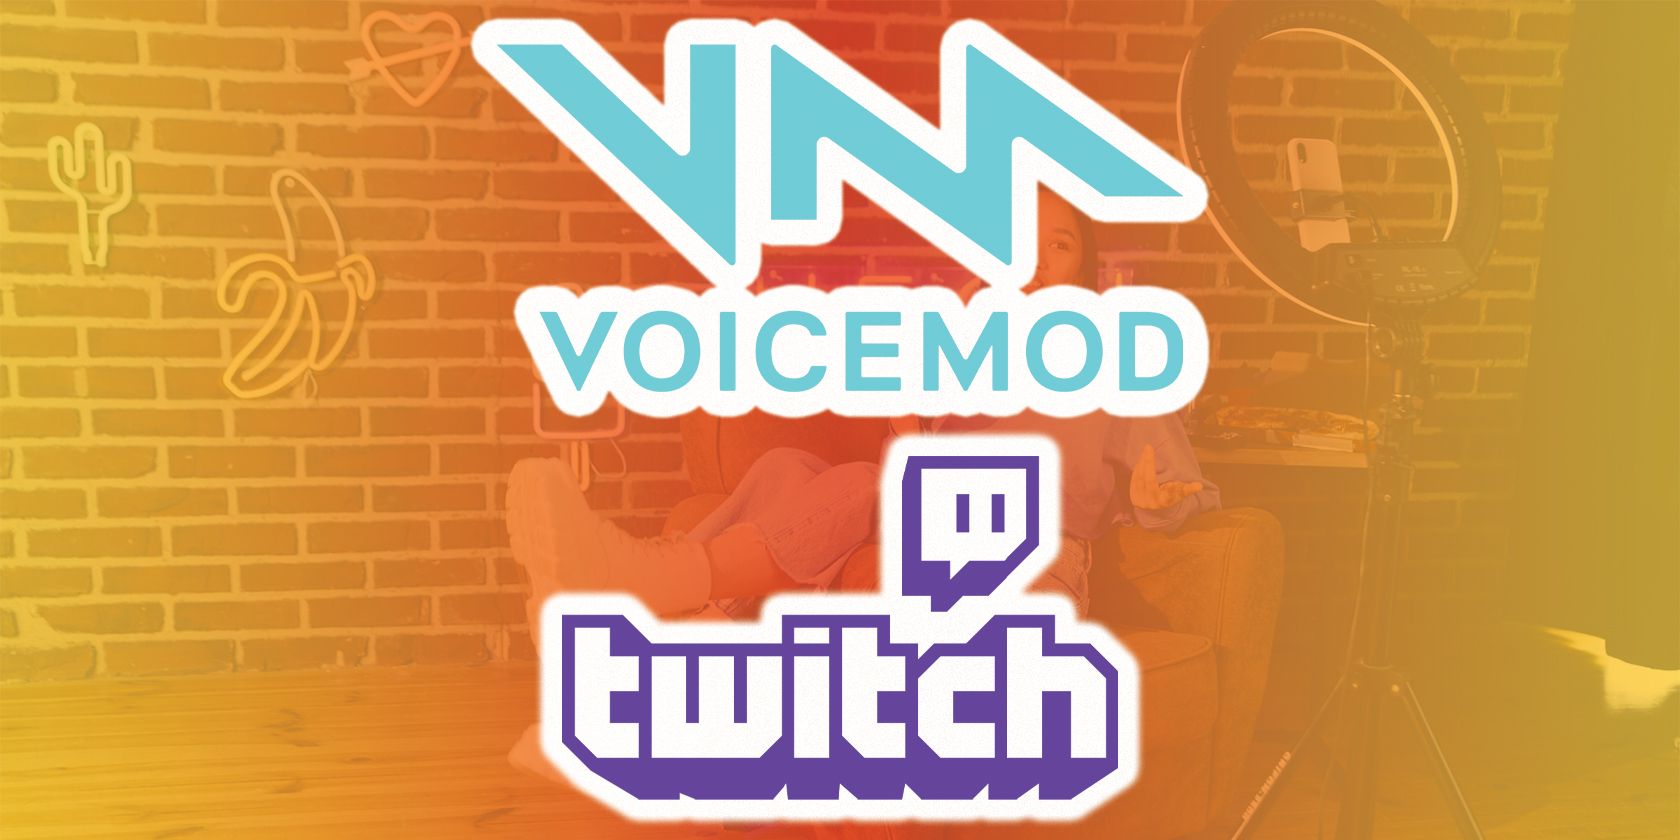 stream deck voicemod